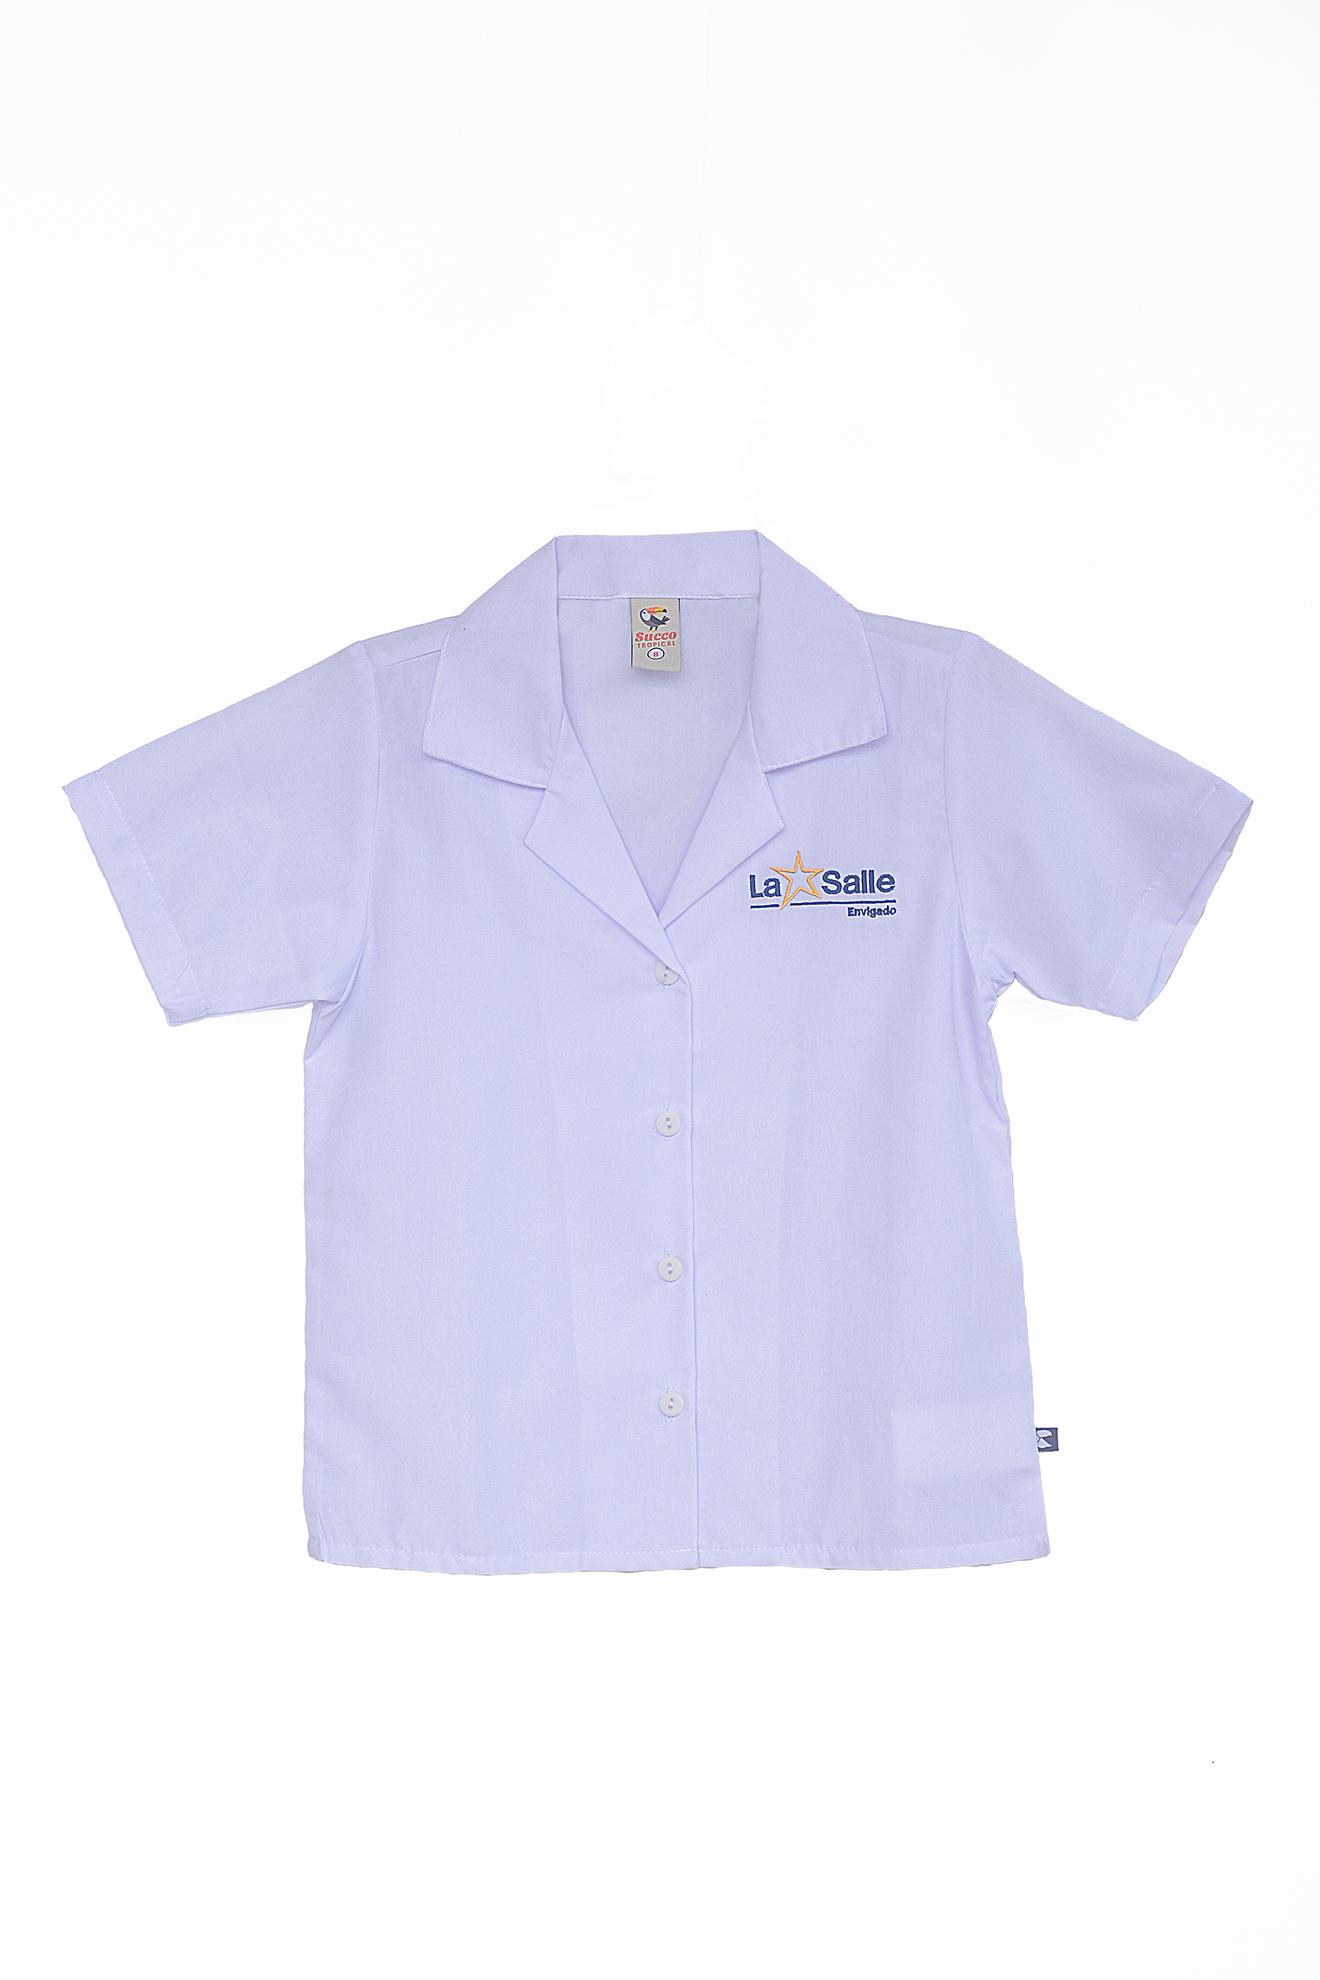 Oferta de Camiseta diario femenina -99123 por $33000 en Succo Tropical